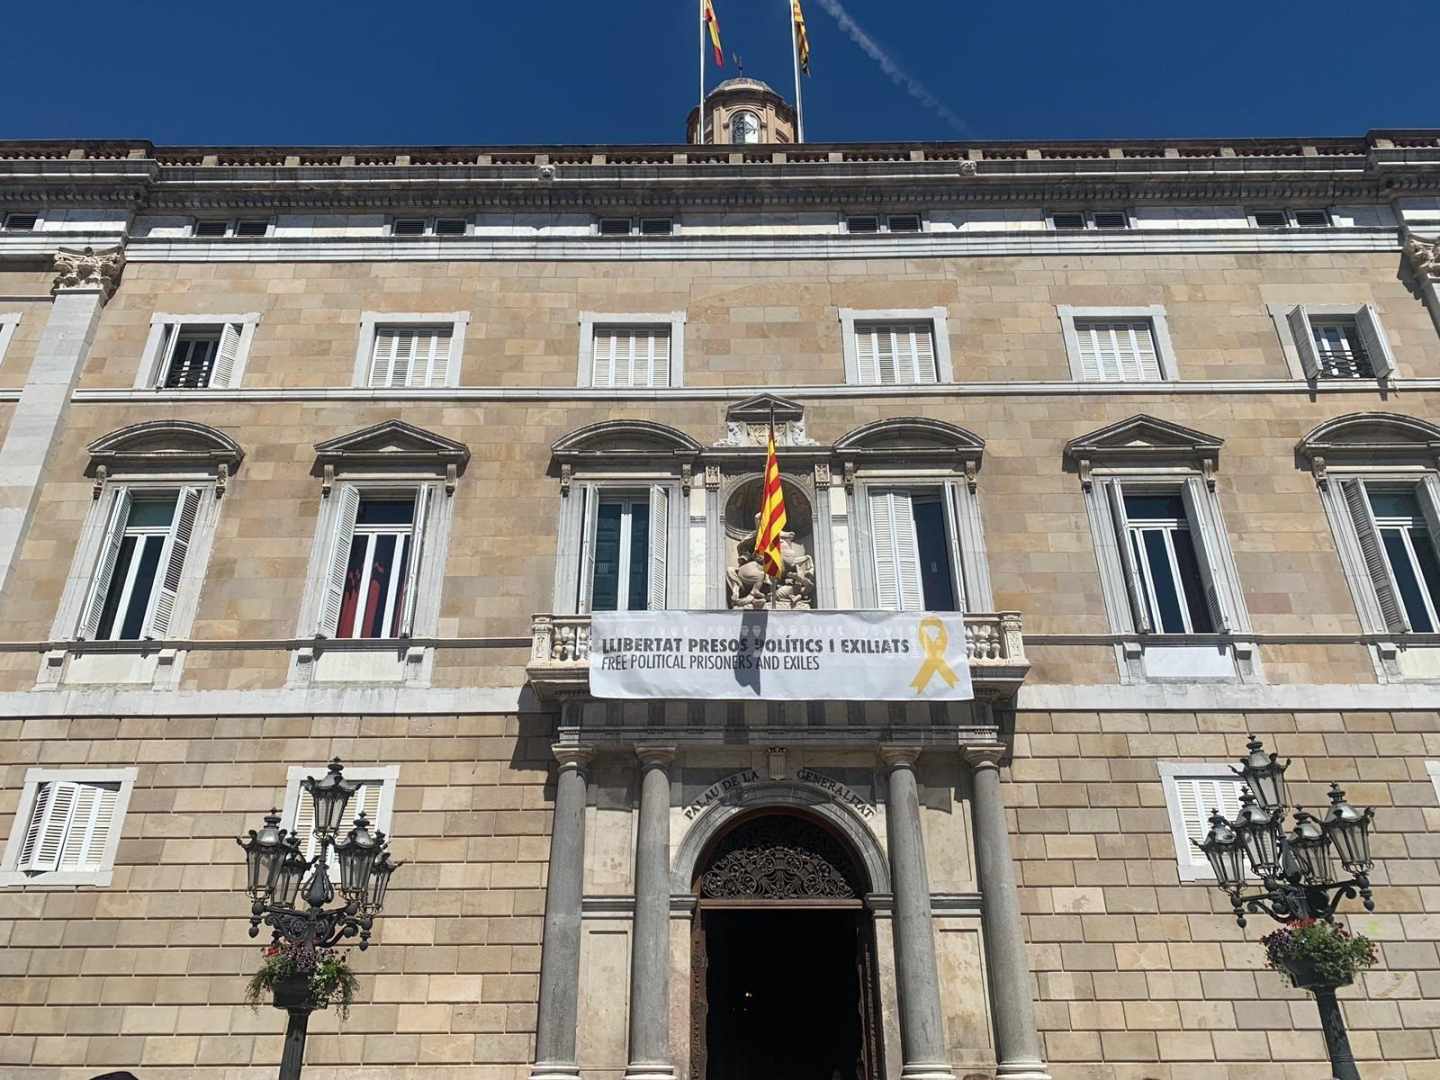 Torra vuelve a colgar la pancarta de los "presos políticos" en la Generalitat